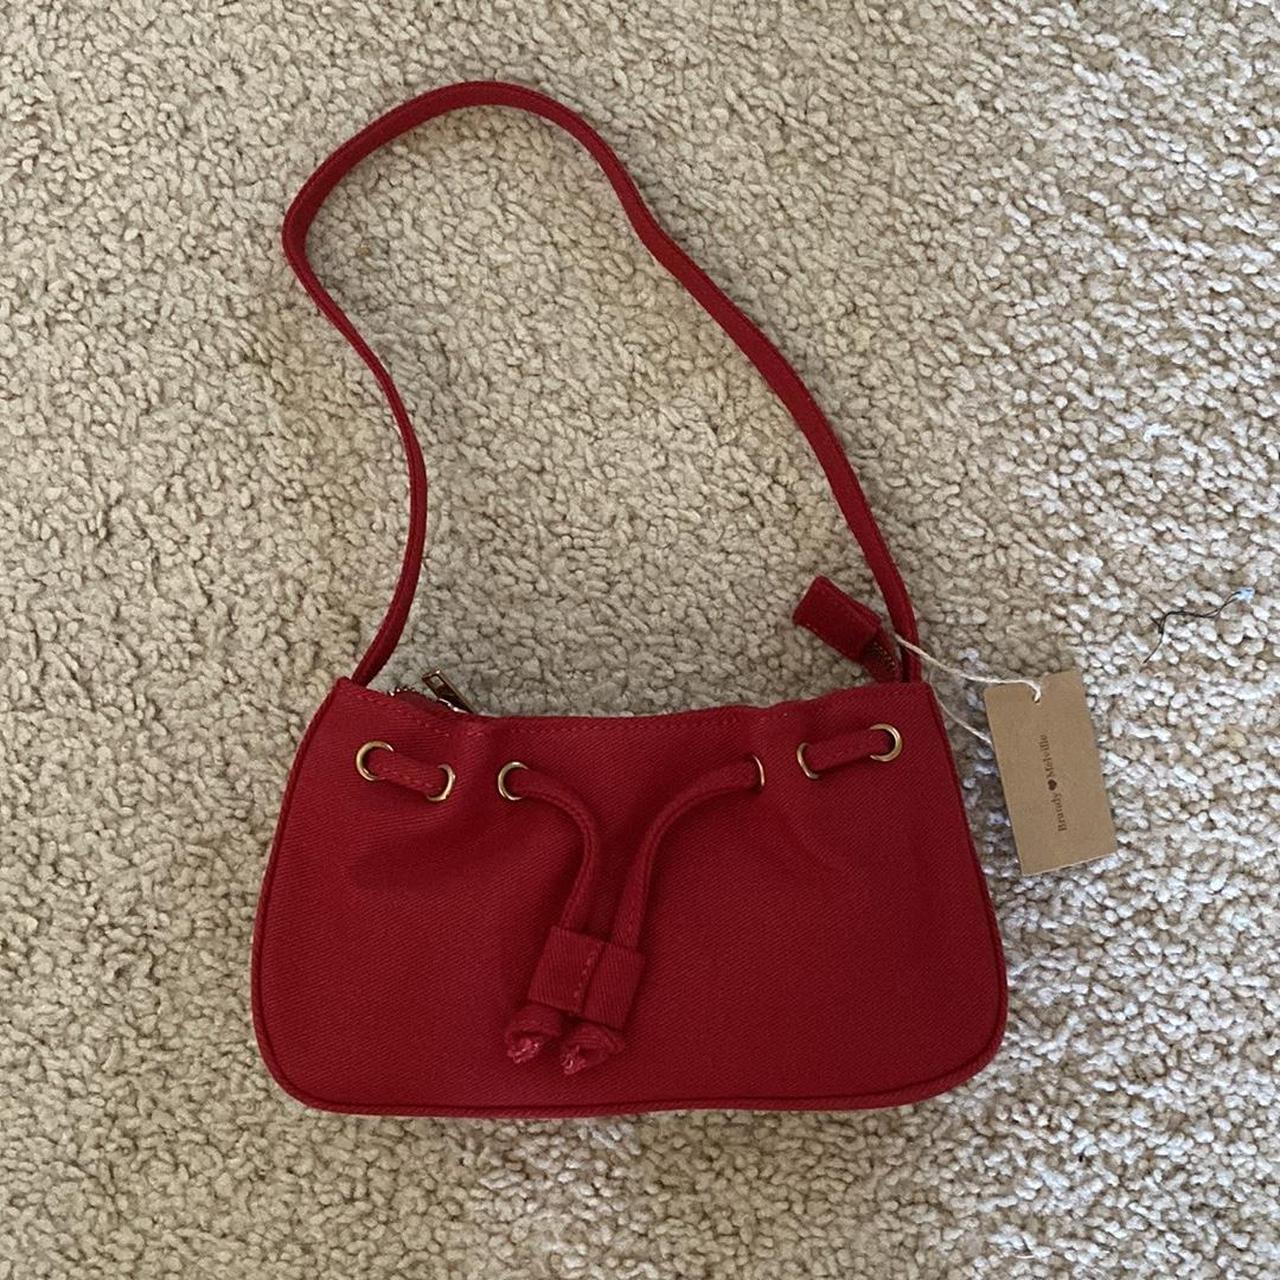 Brandy melville red shoulder bag